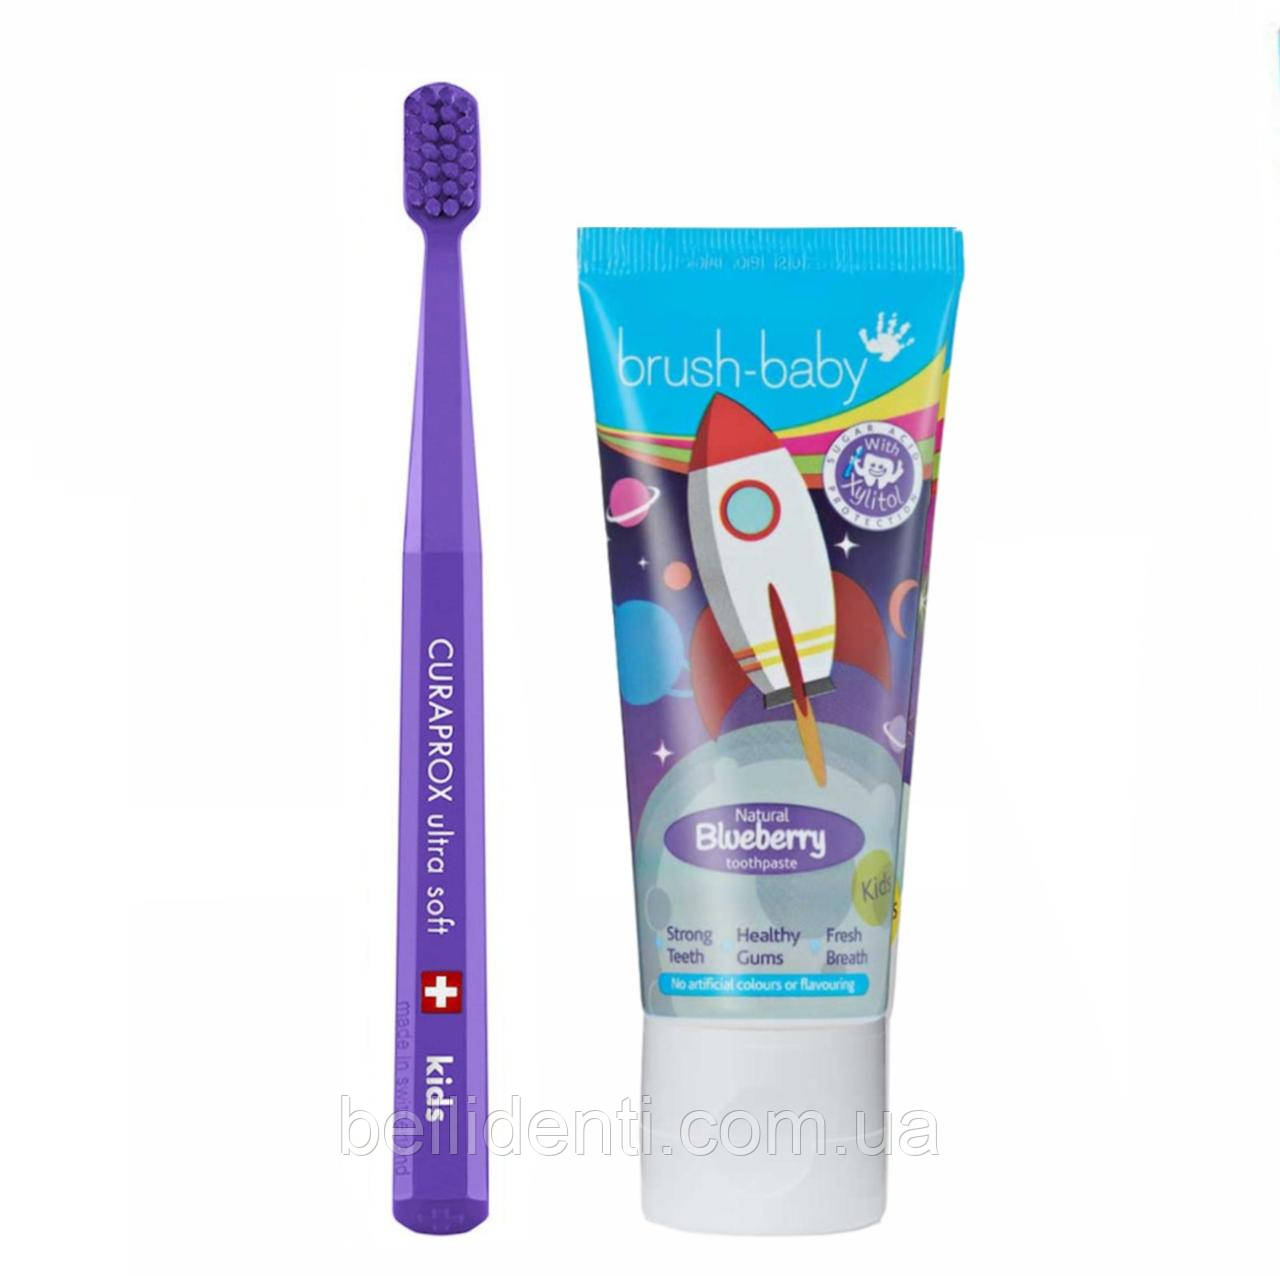 Набір Curaprox Brush-Baby від 4 до 12 років (зубна паста та фіолетова щітка), ракета